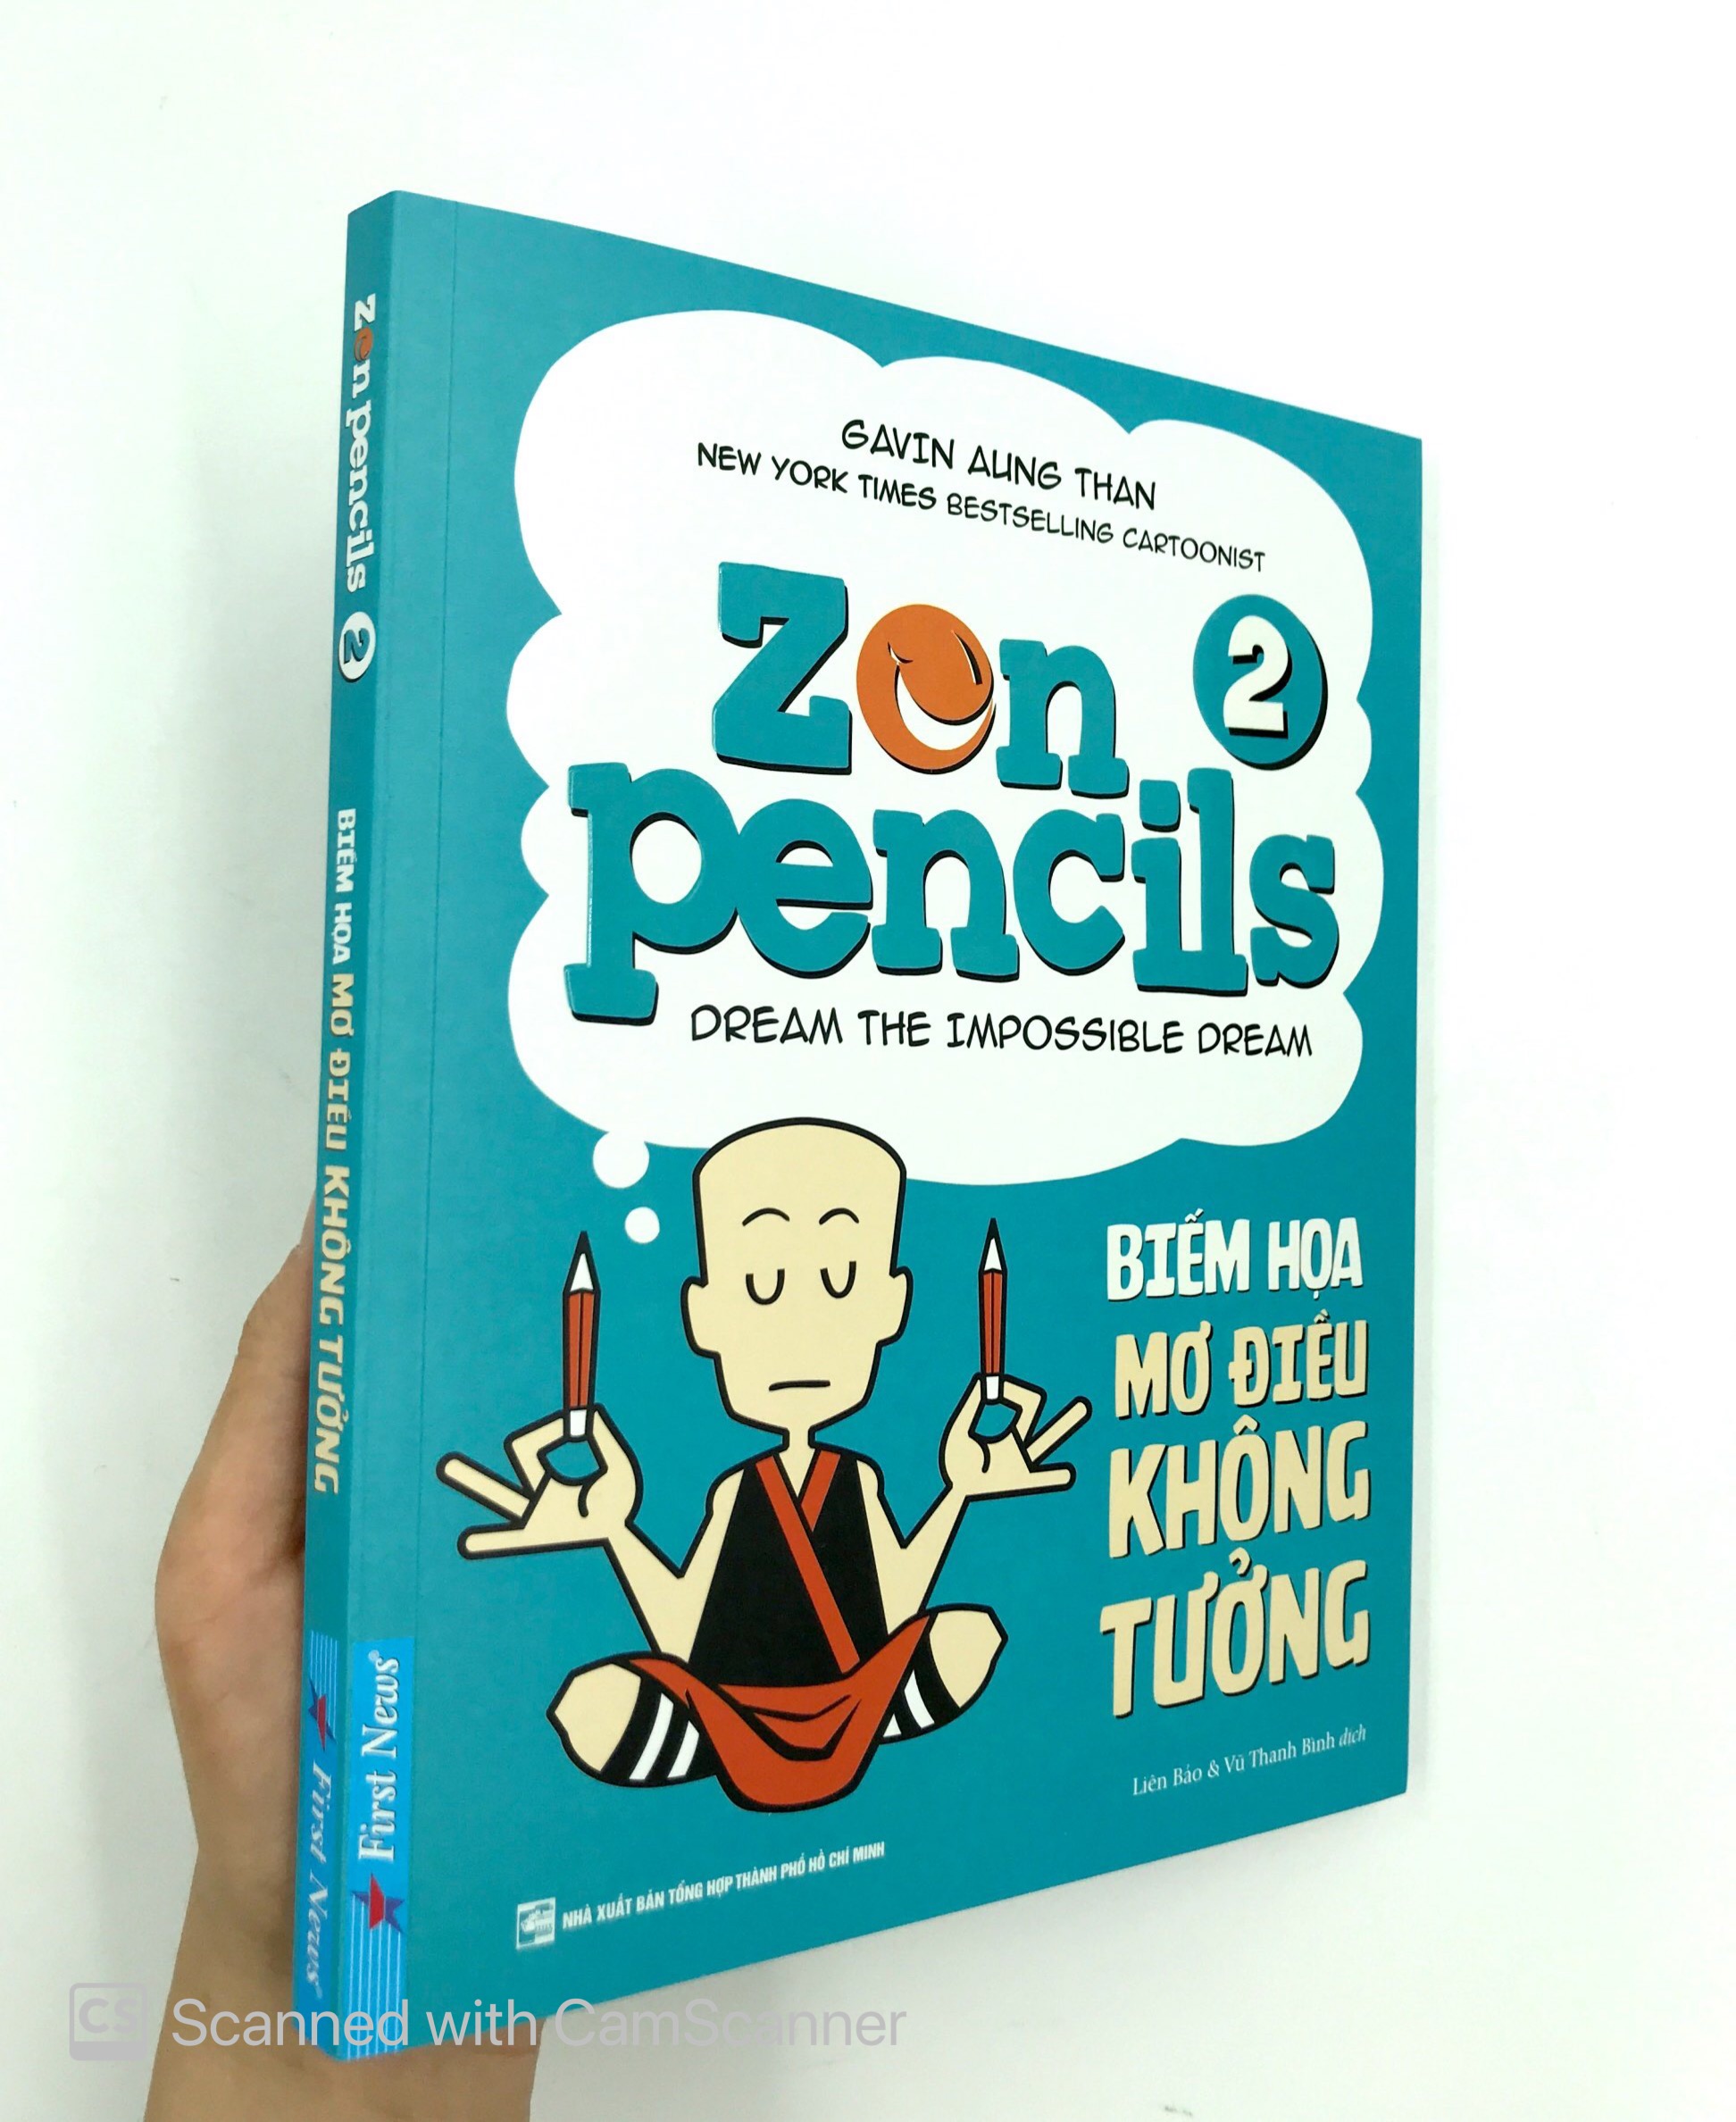 Zen Pencils 2 - Biếm Họa Mơ Điều Không Tưởng PDF